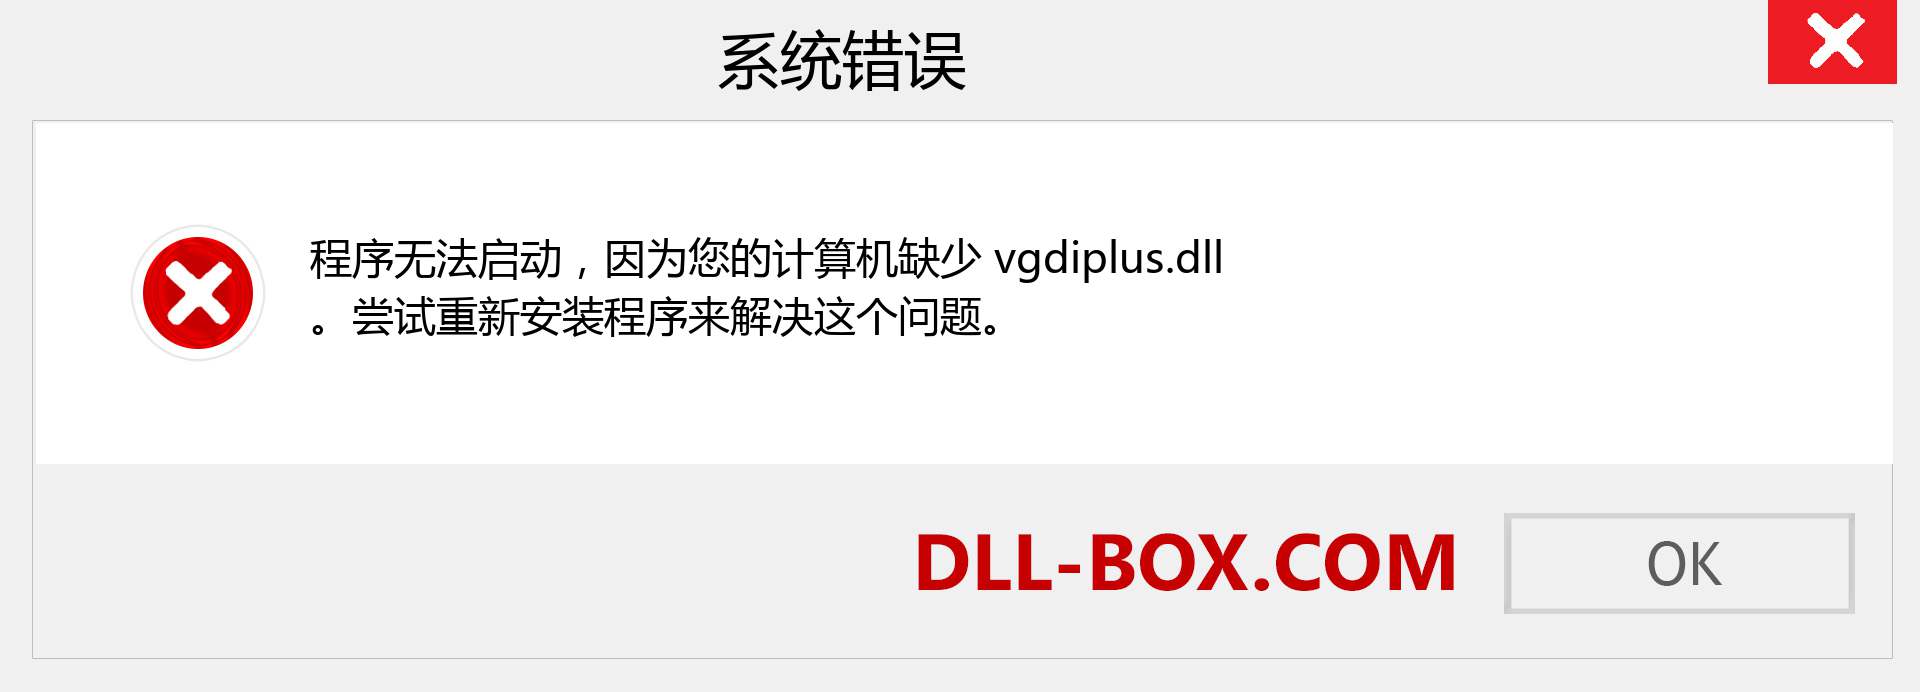 vgdiplus.dll 文件丢失？。 适用于 Windows 7、8、10 的下载 - 修复 Windows、照片、图像上的 vgdiplus dll 丢失错误